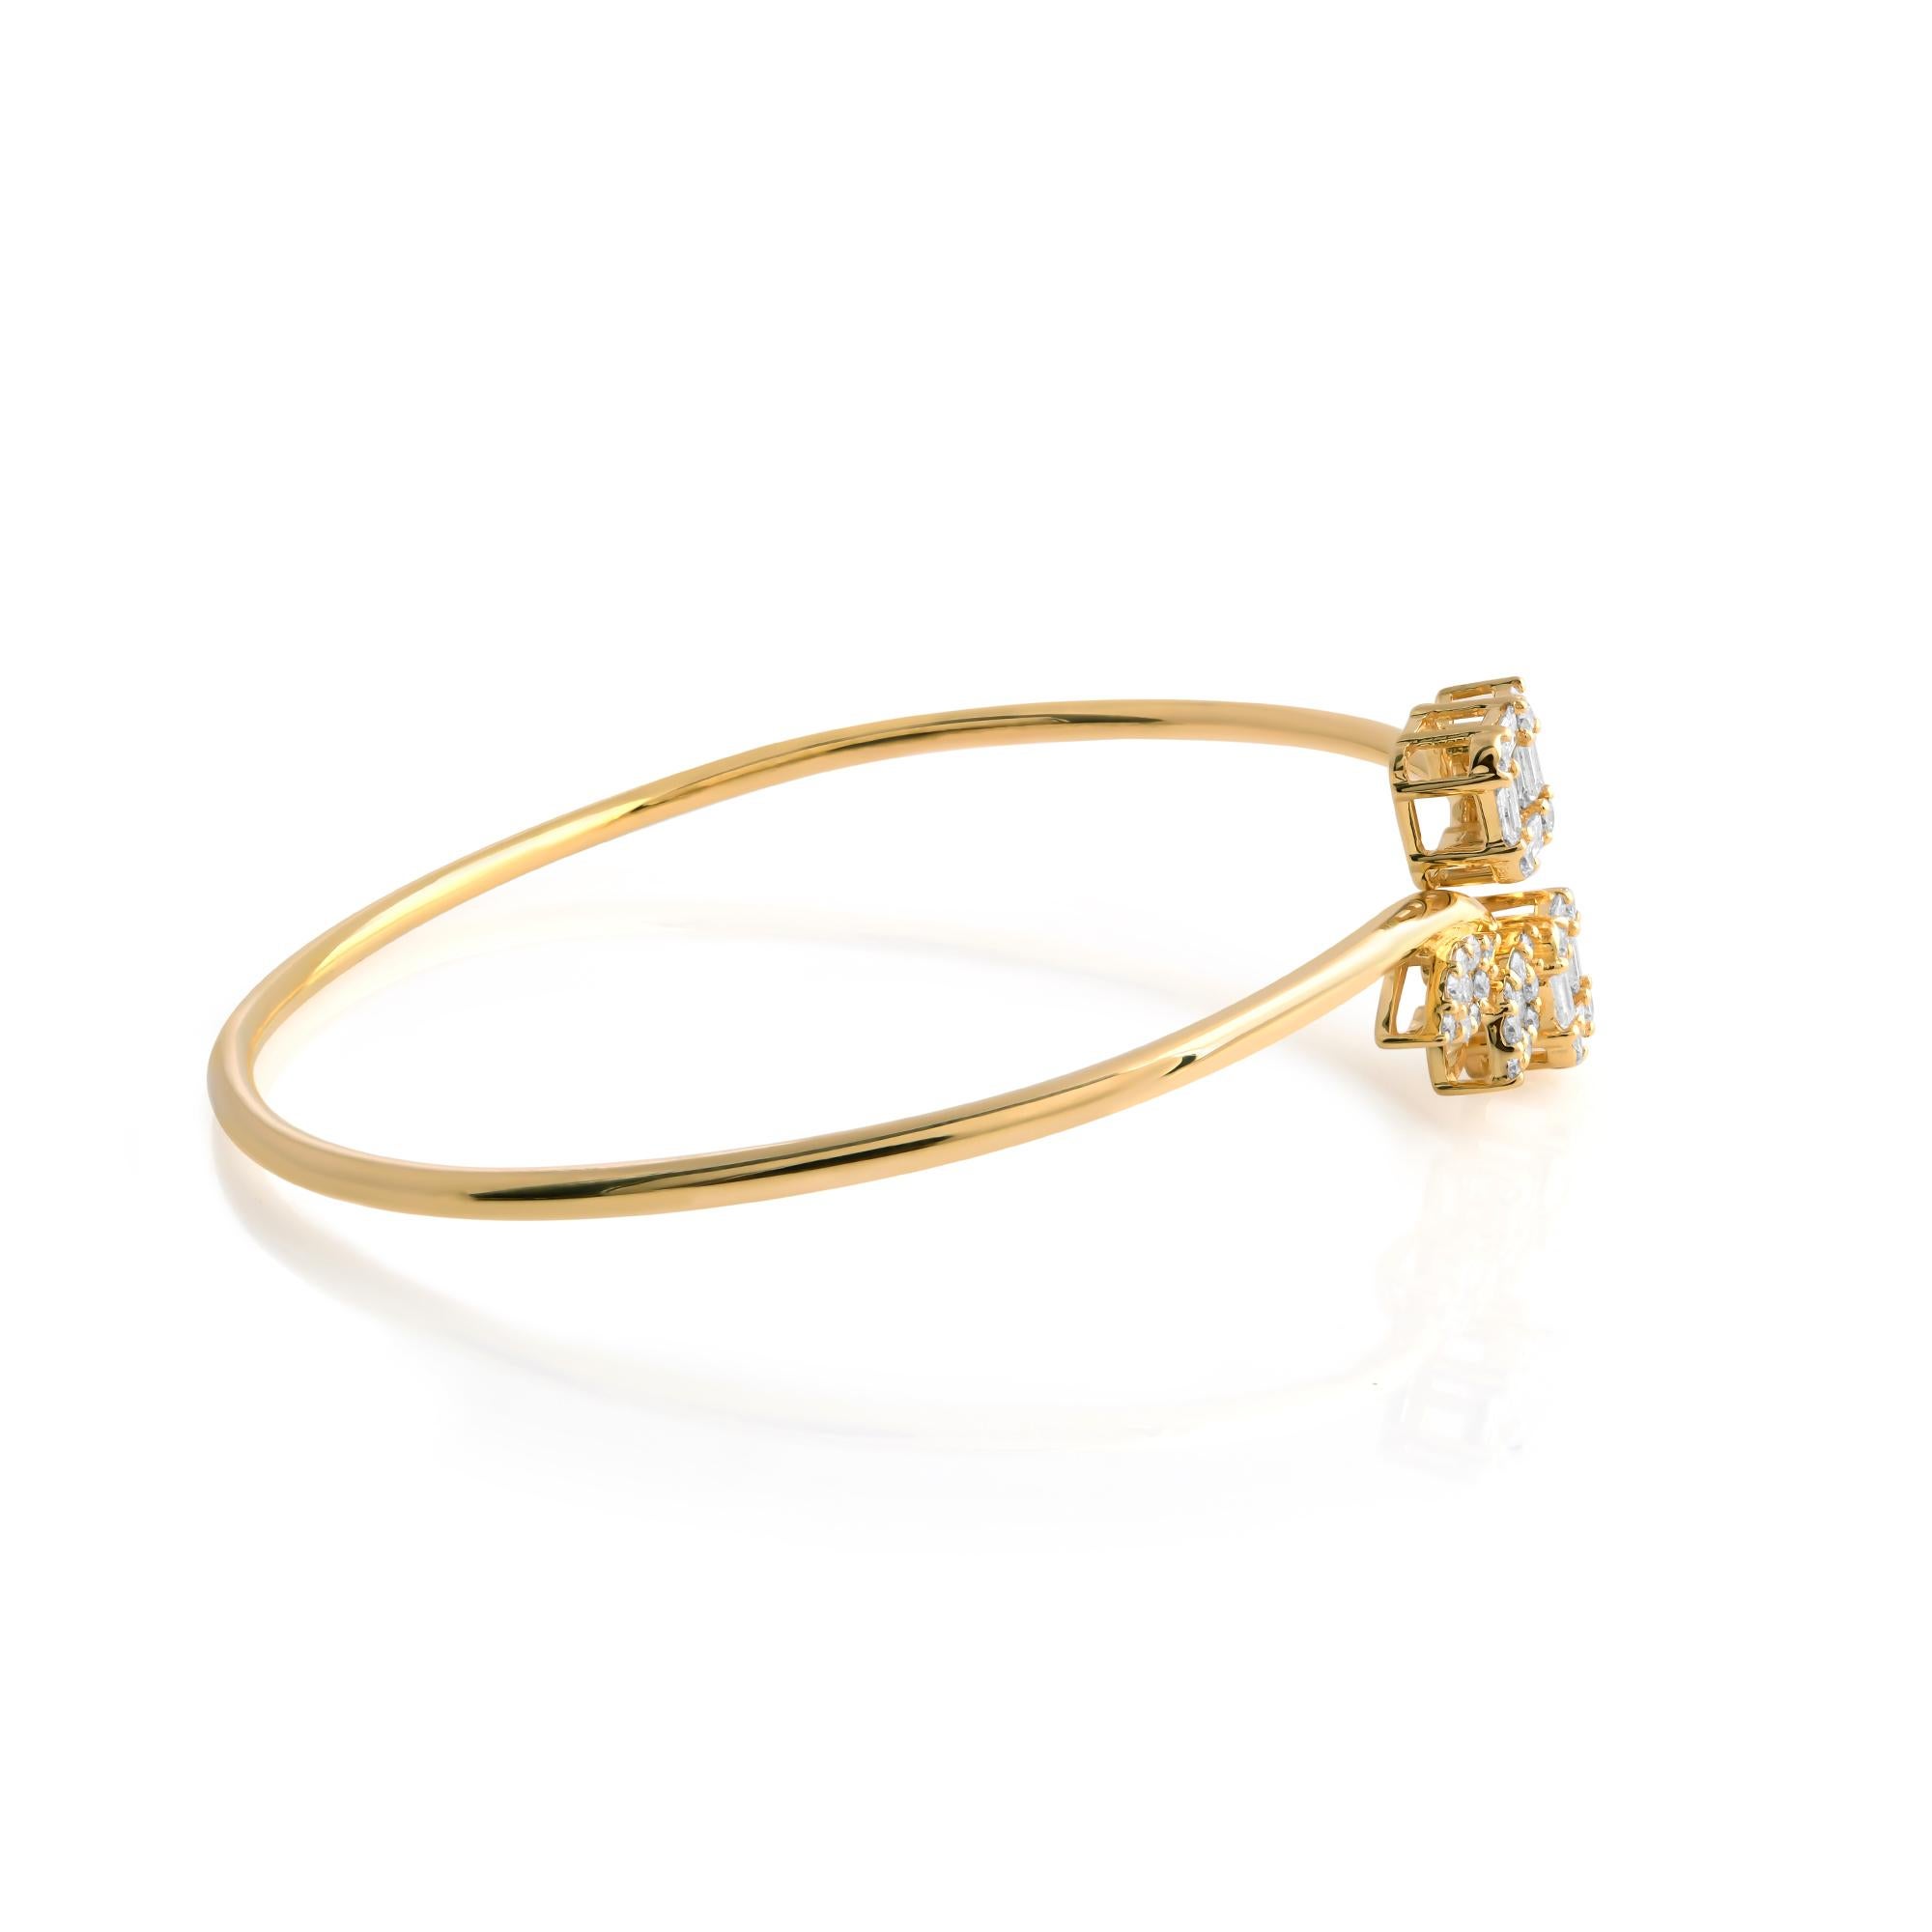 Lassen Sie sich von der zeitlosen Eleganz dieses exquisiten Manschettenarmbands mit natürlichen SI/HI-Baguette-Diamanten aus glänzendem 14 Karat Gelbgold verzaubern. Jede Facette dieses Armbands strahlt Raffinesse und Anmut aus und macht es zu einer